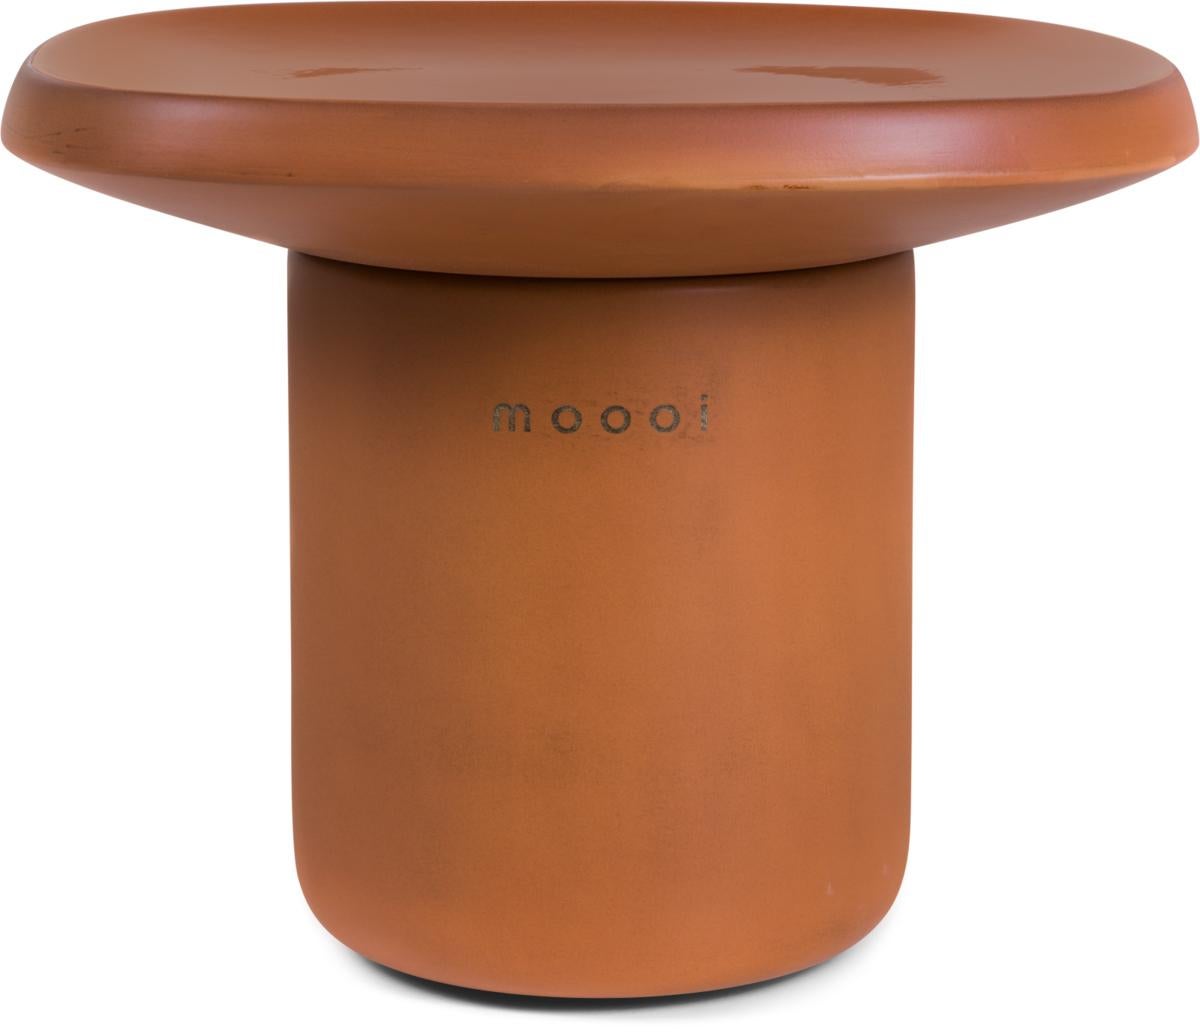 Moooi Obon Square Low Ceramic Table in Terracotta Finish by Simone Bonanni For Sale 3